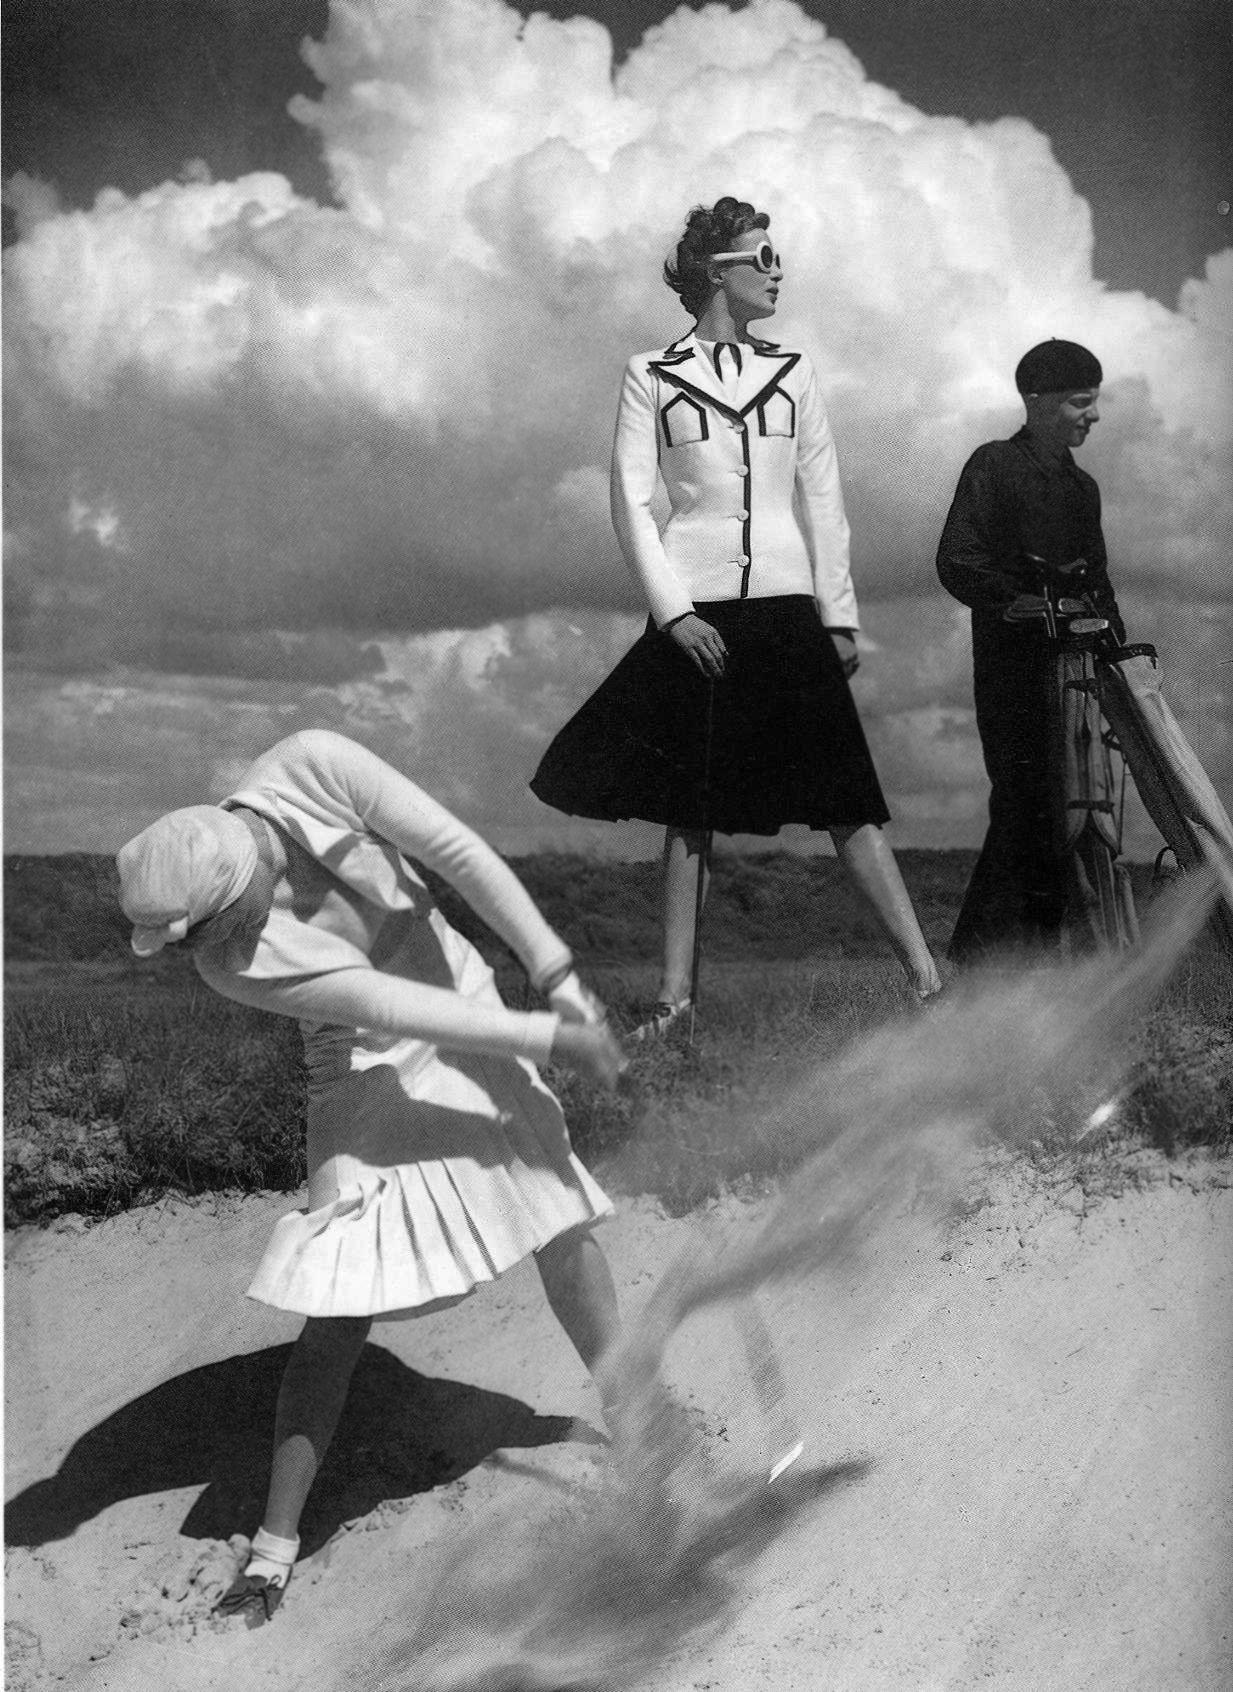 Norman Parkinson
Golfspielen in Le Toque, 1939
Silber-Gelatine-Druck
24 x 20  Zoll 
Verso nachlassgestempelt und nummeriert

Eine Frau in einem weißen Anzug schlägt einen Golfball in ein Sandloch. Eine Frau in einem weiß-schwarzen Anzug und ein